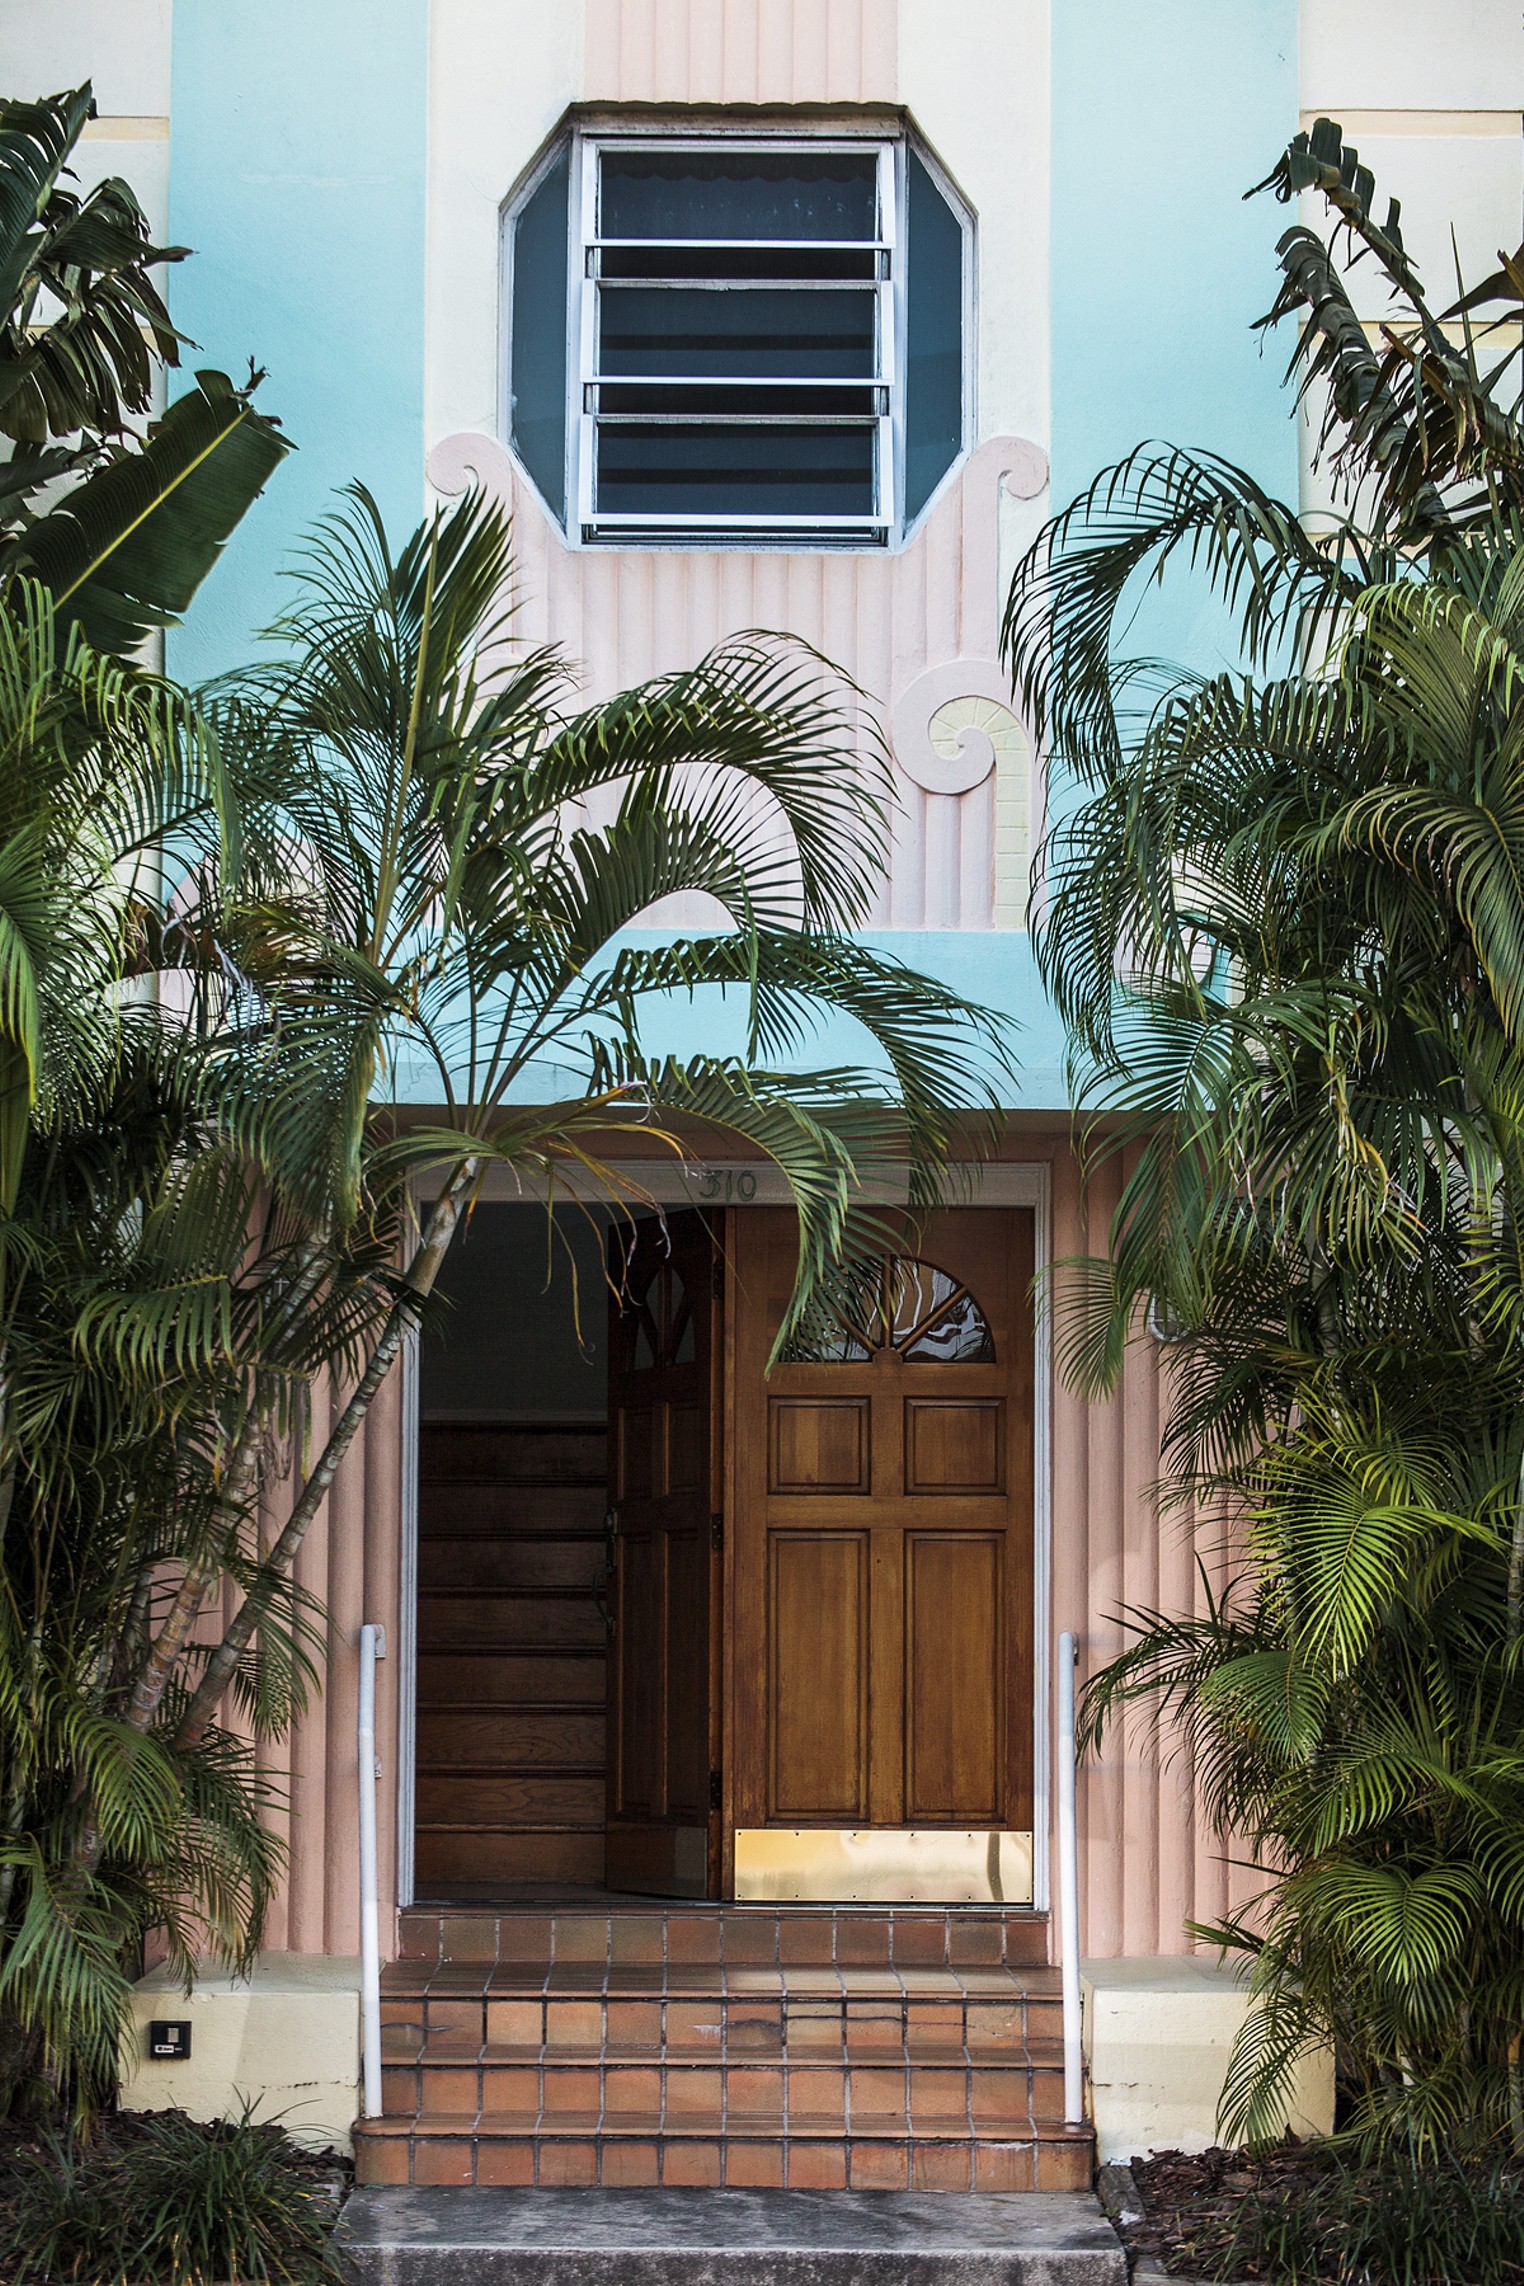 North Beach's Miami Modernism Architecture | Miami | Miami New Times ...